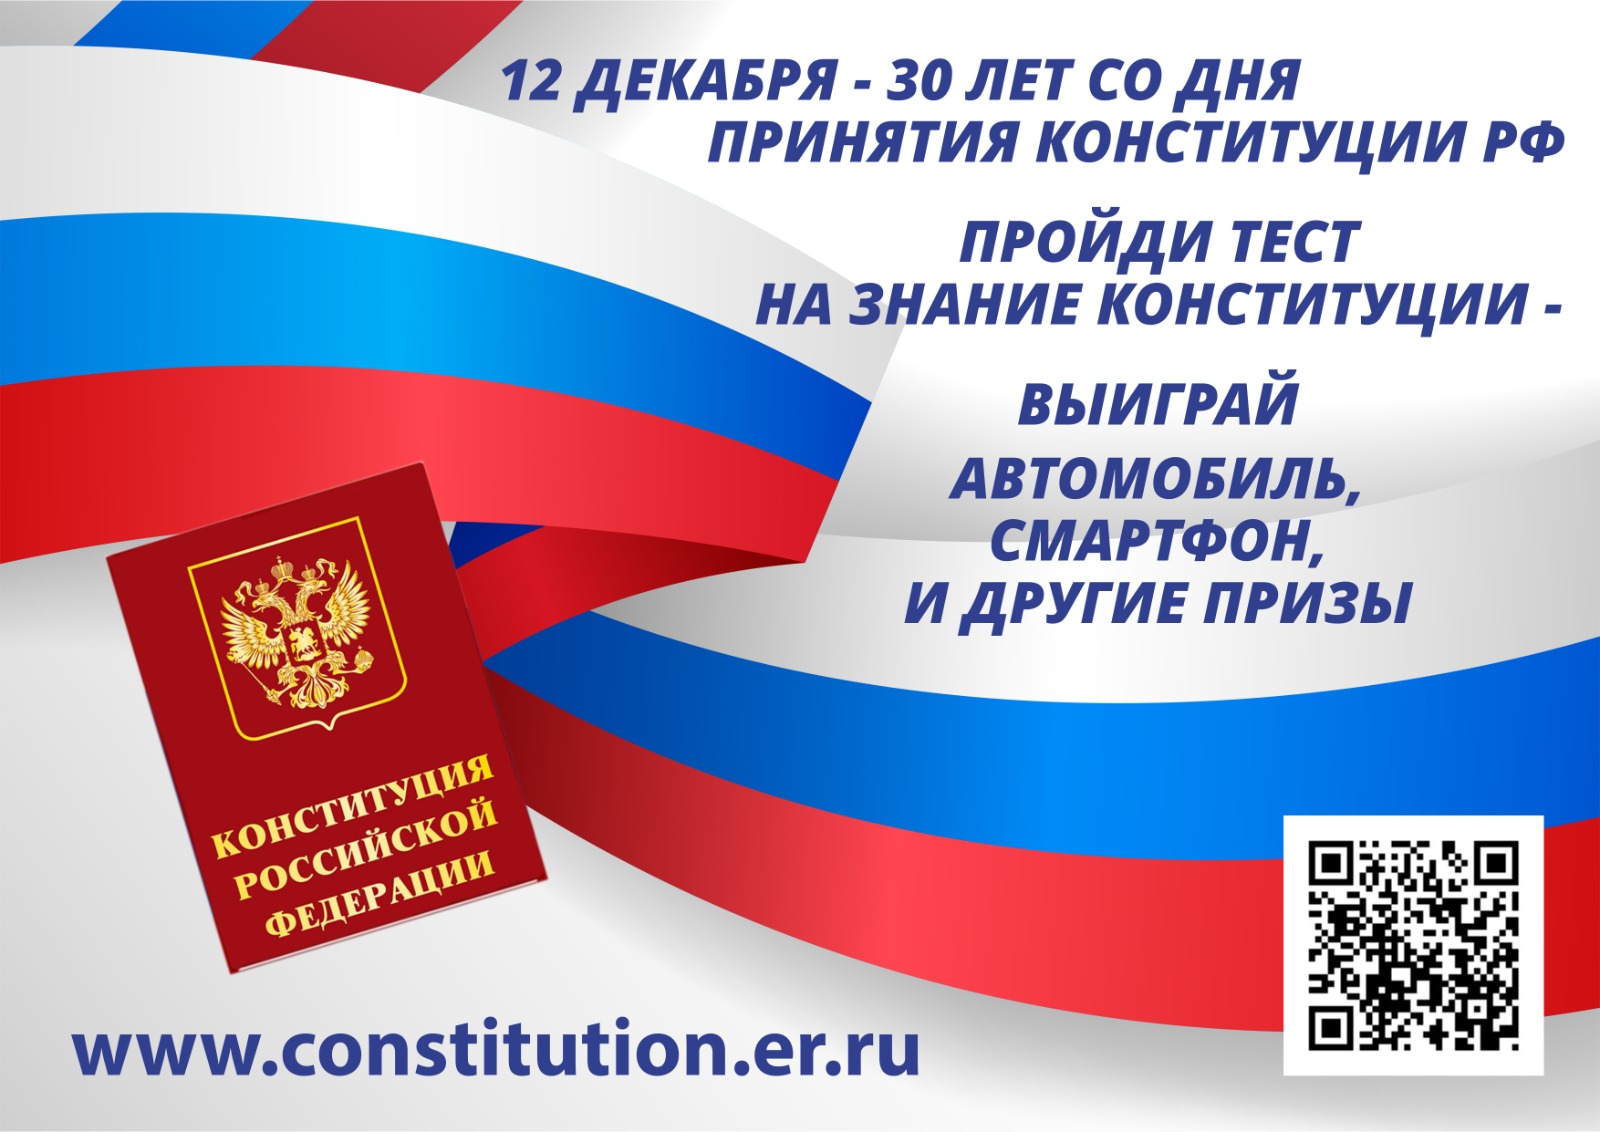 12 декабря 2023 года - 30 лет со дня принятия Конституции России! Проверьте себя, пройдите тест на знание Конституции и выиграйте автомобиль, смартфон и другие призы